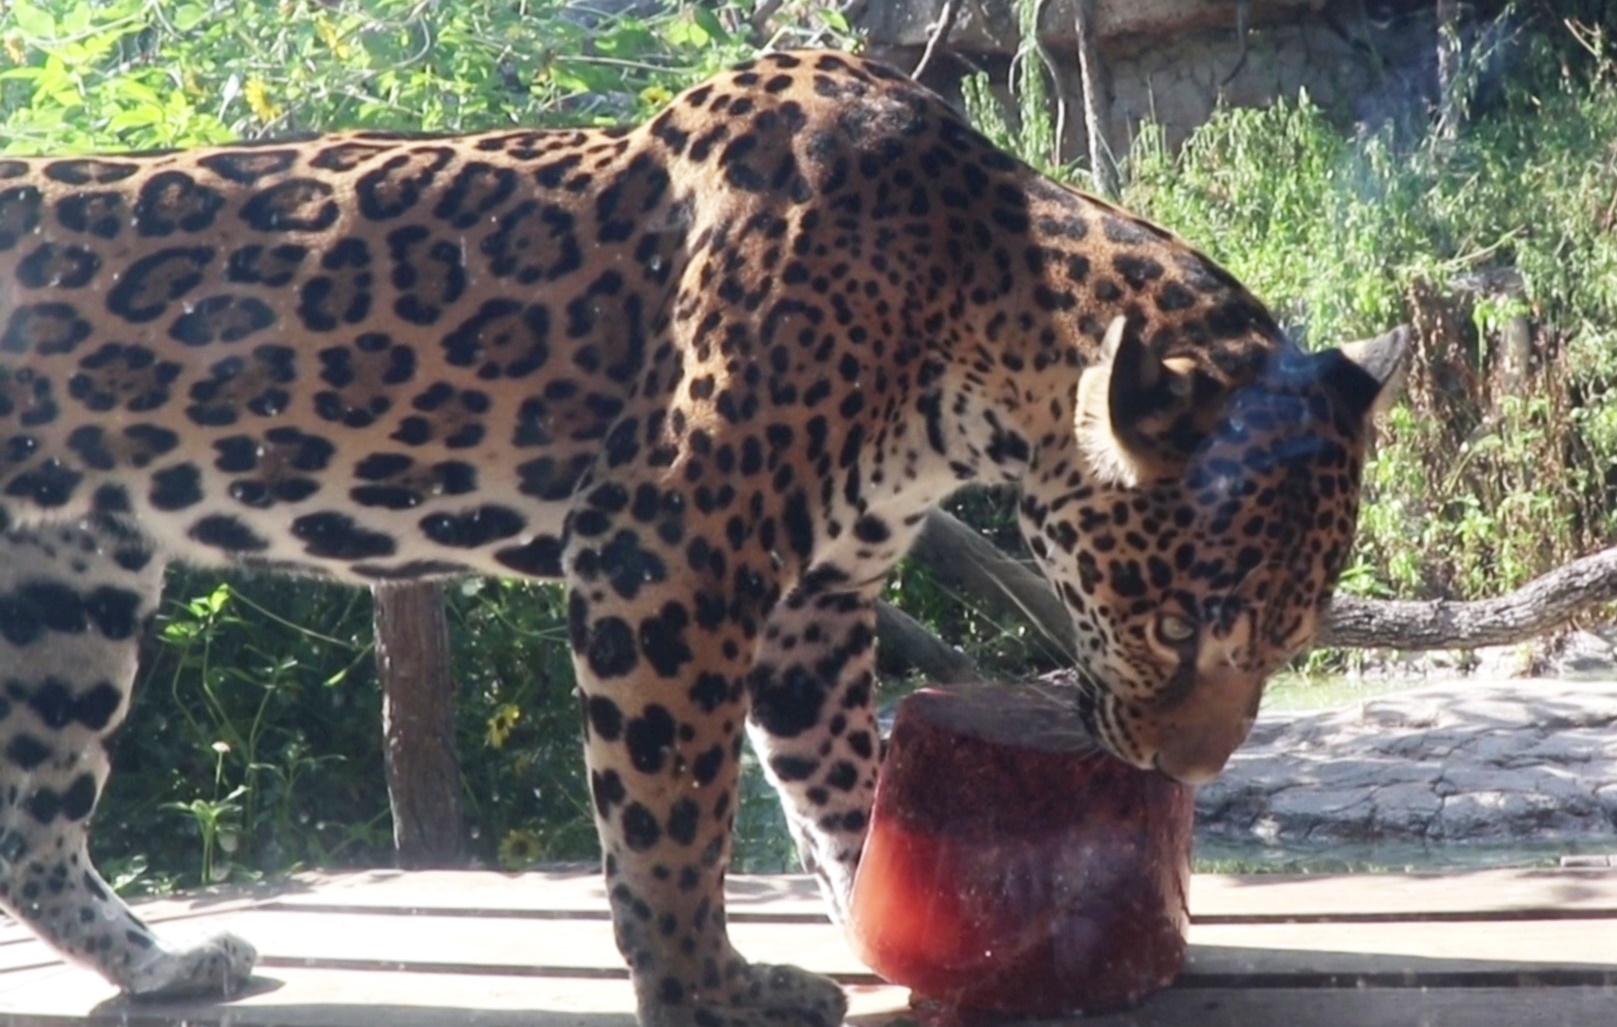 «Мясное мороженое» готовят в жару для хищников в зоопарке в Хьюстоне